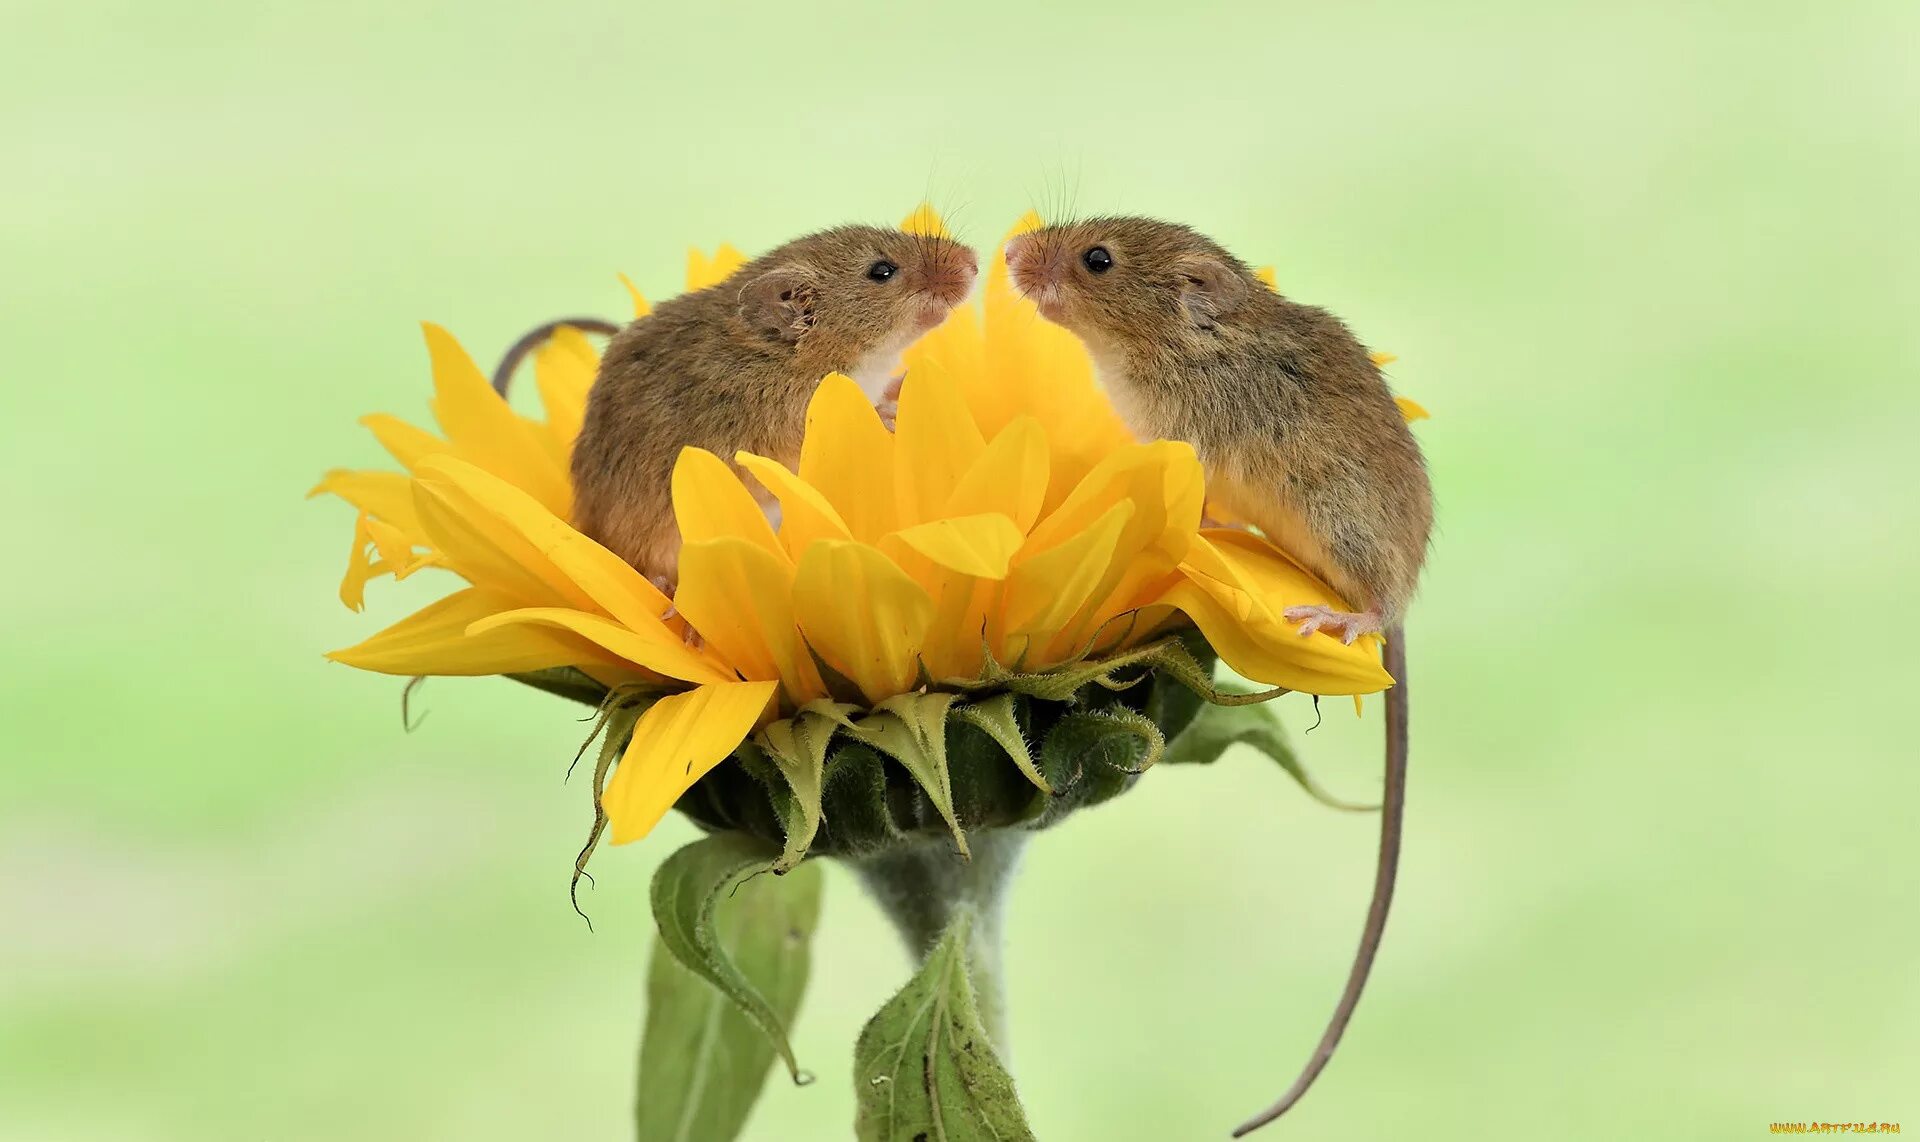 Мыши весной. Мышка полевка в цветке. Мышь Малютка. Мышь Малютка в цветке. Московский зоопарк мыши-малютки.